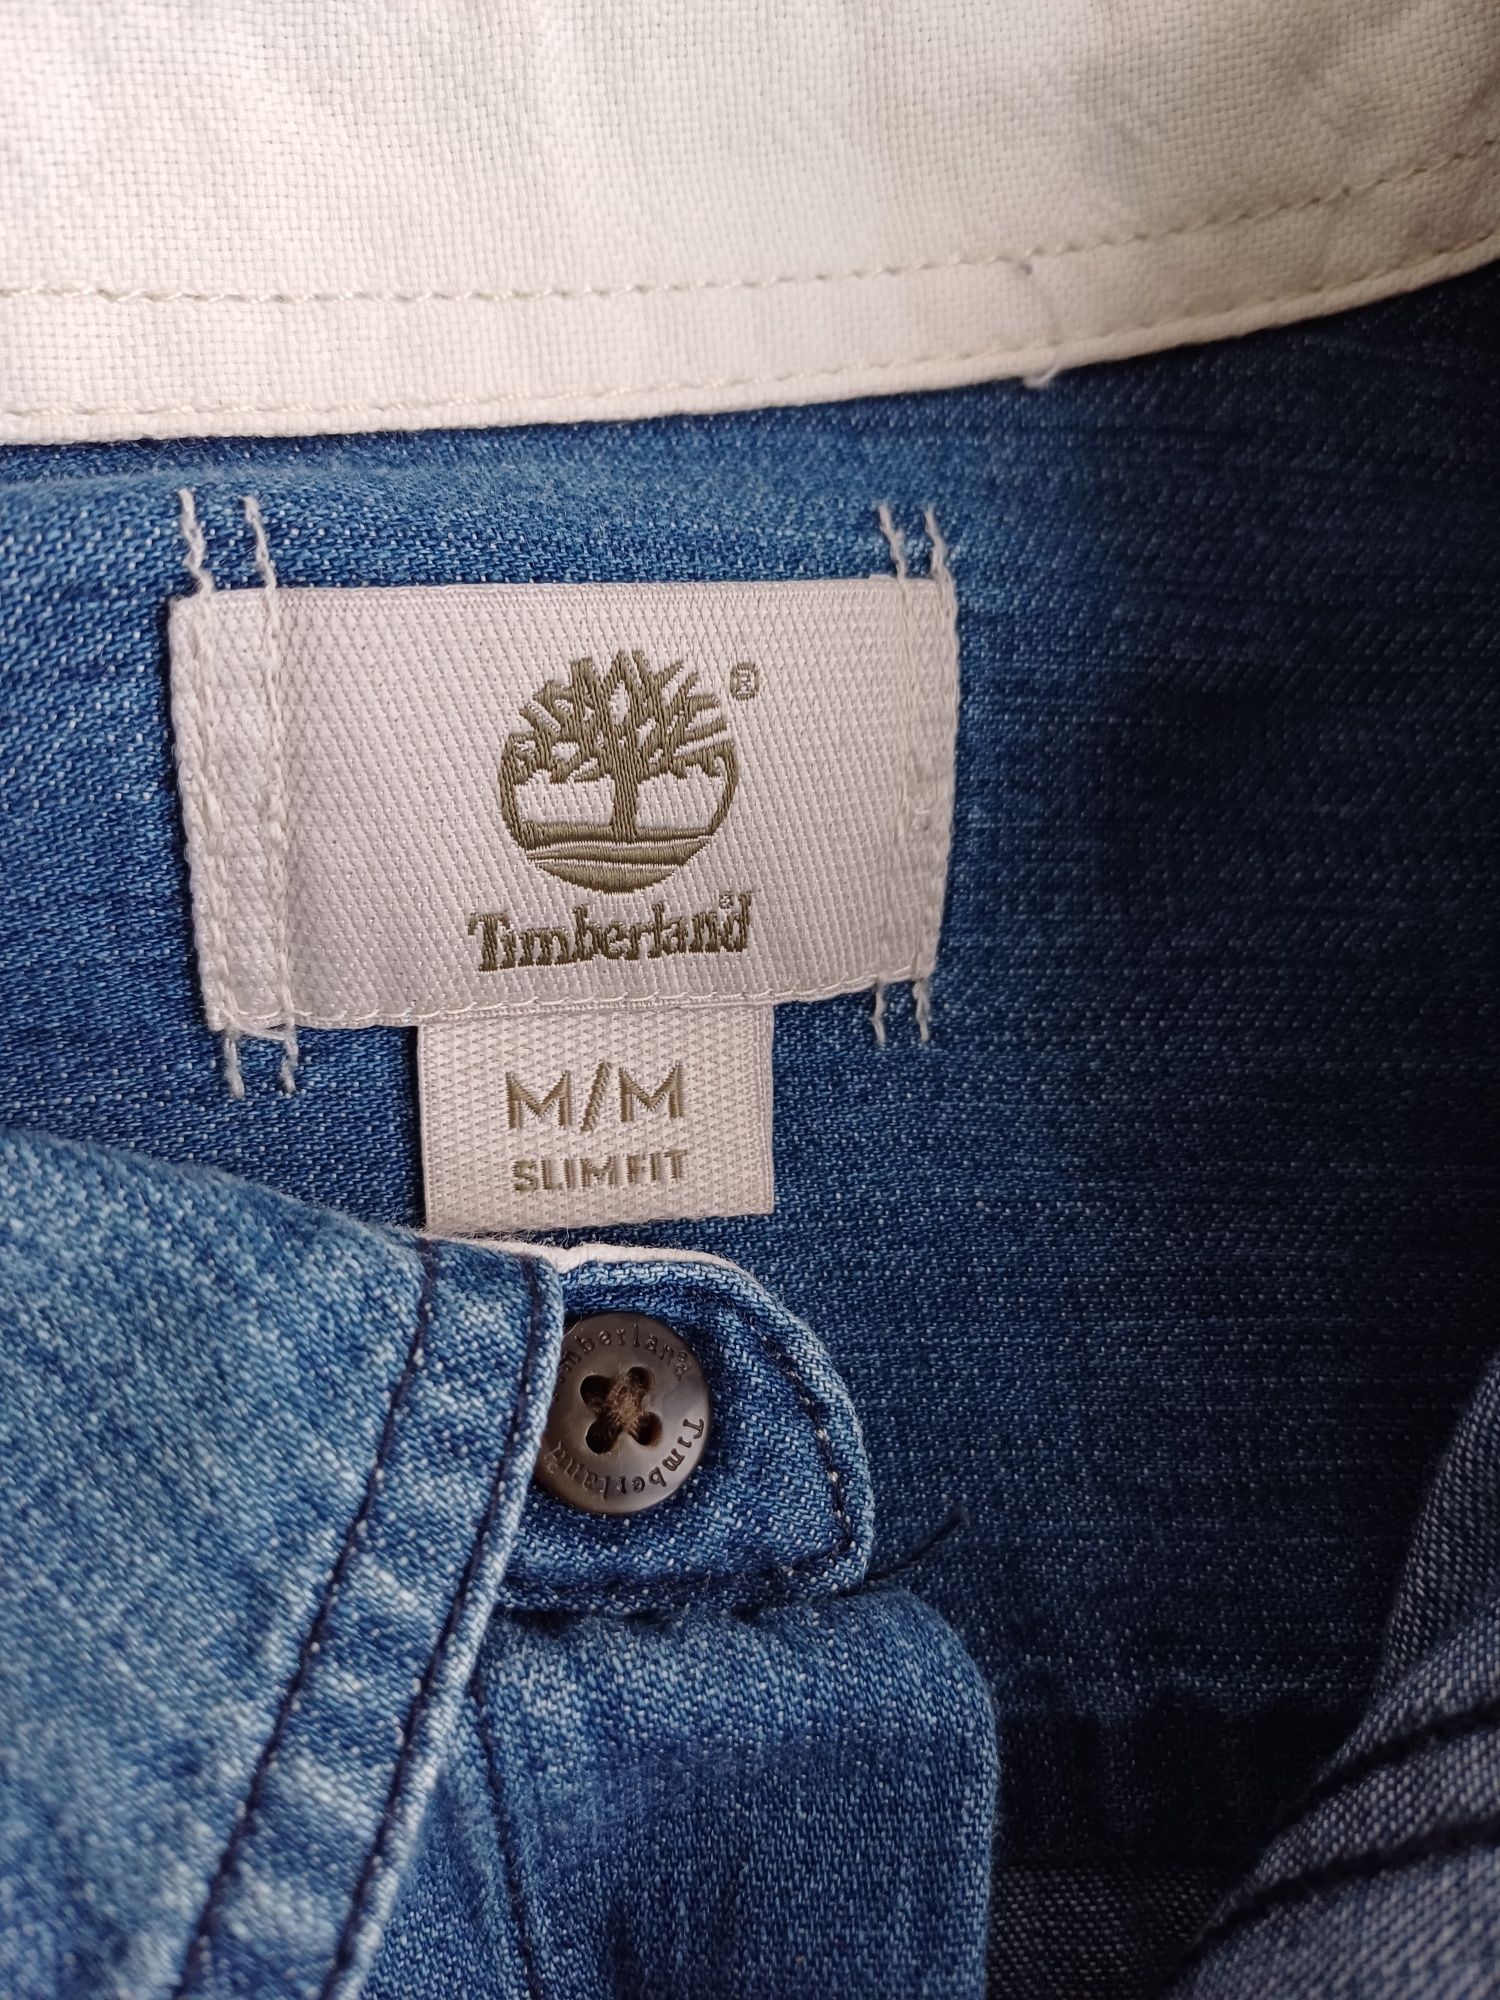 Мужская джинсовая рубашка Timberland ( оригинал) М